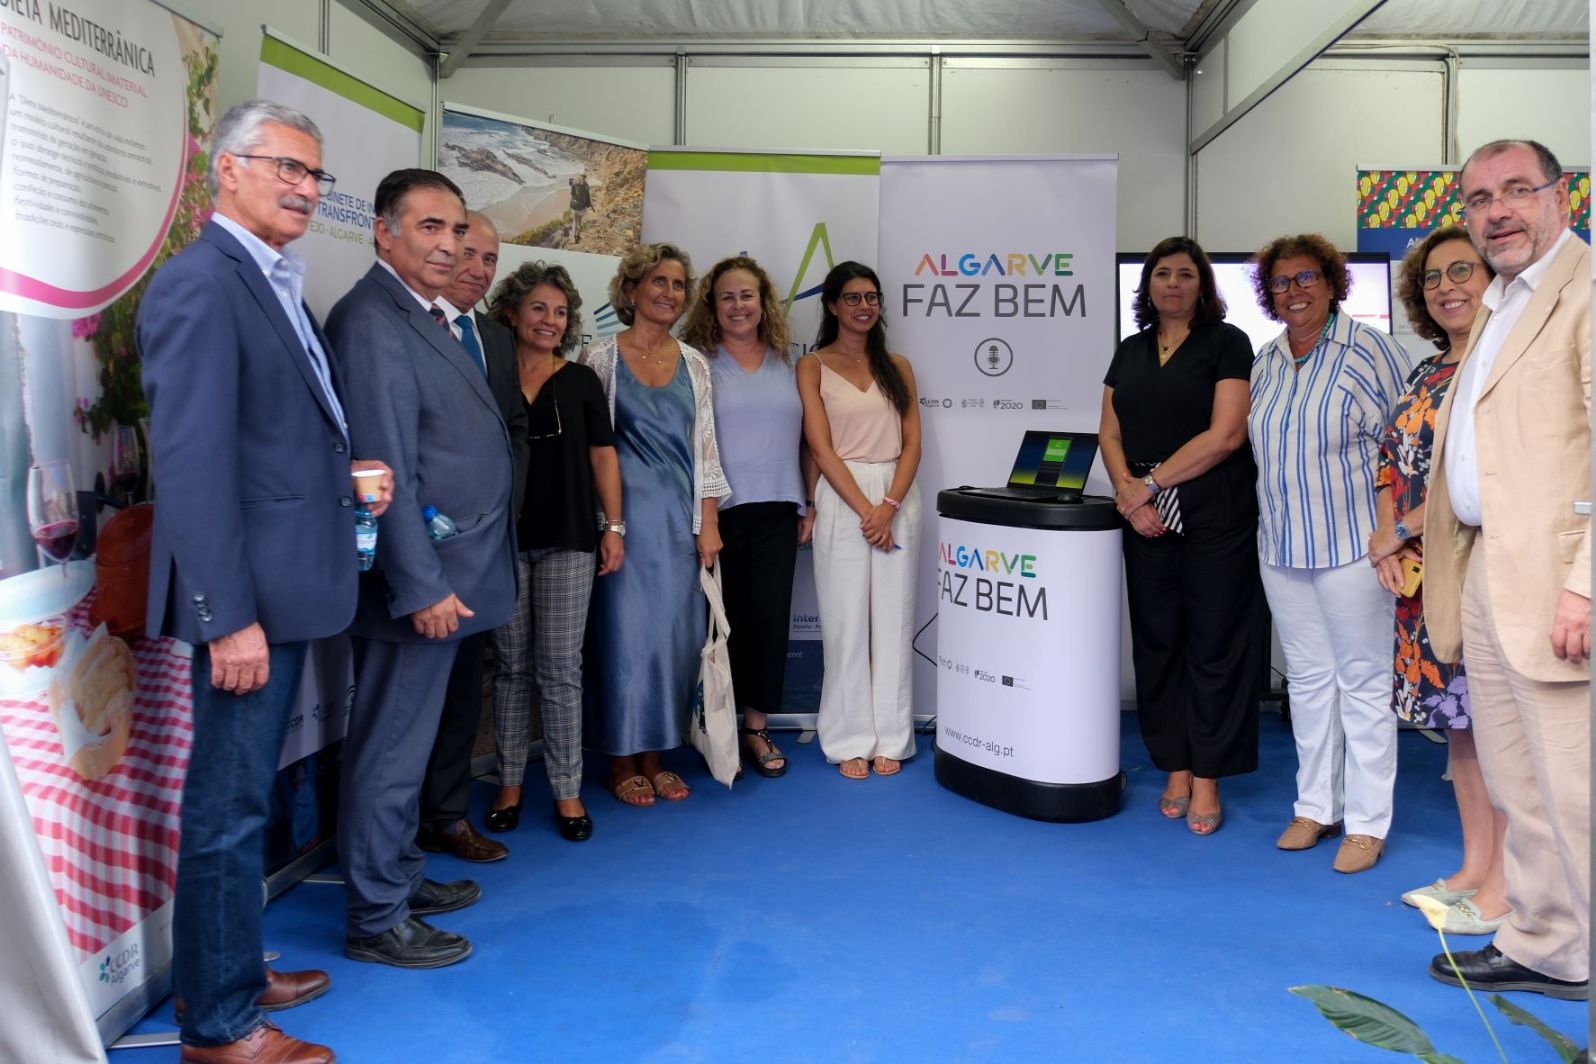 Algarve defende dieta mediterrânica como padrão de alimentação saudável e aliada da sustentabilidade ambiental